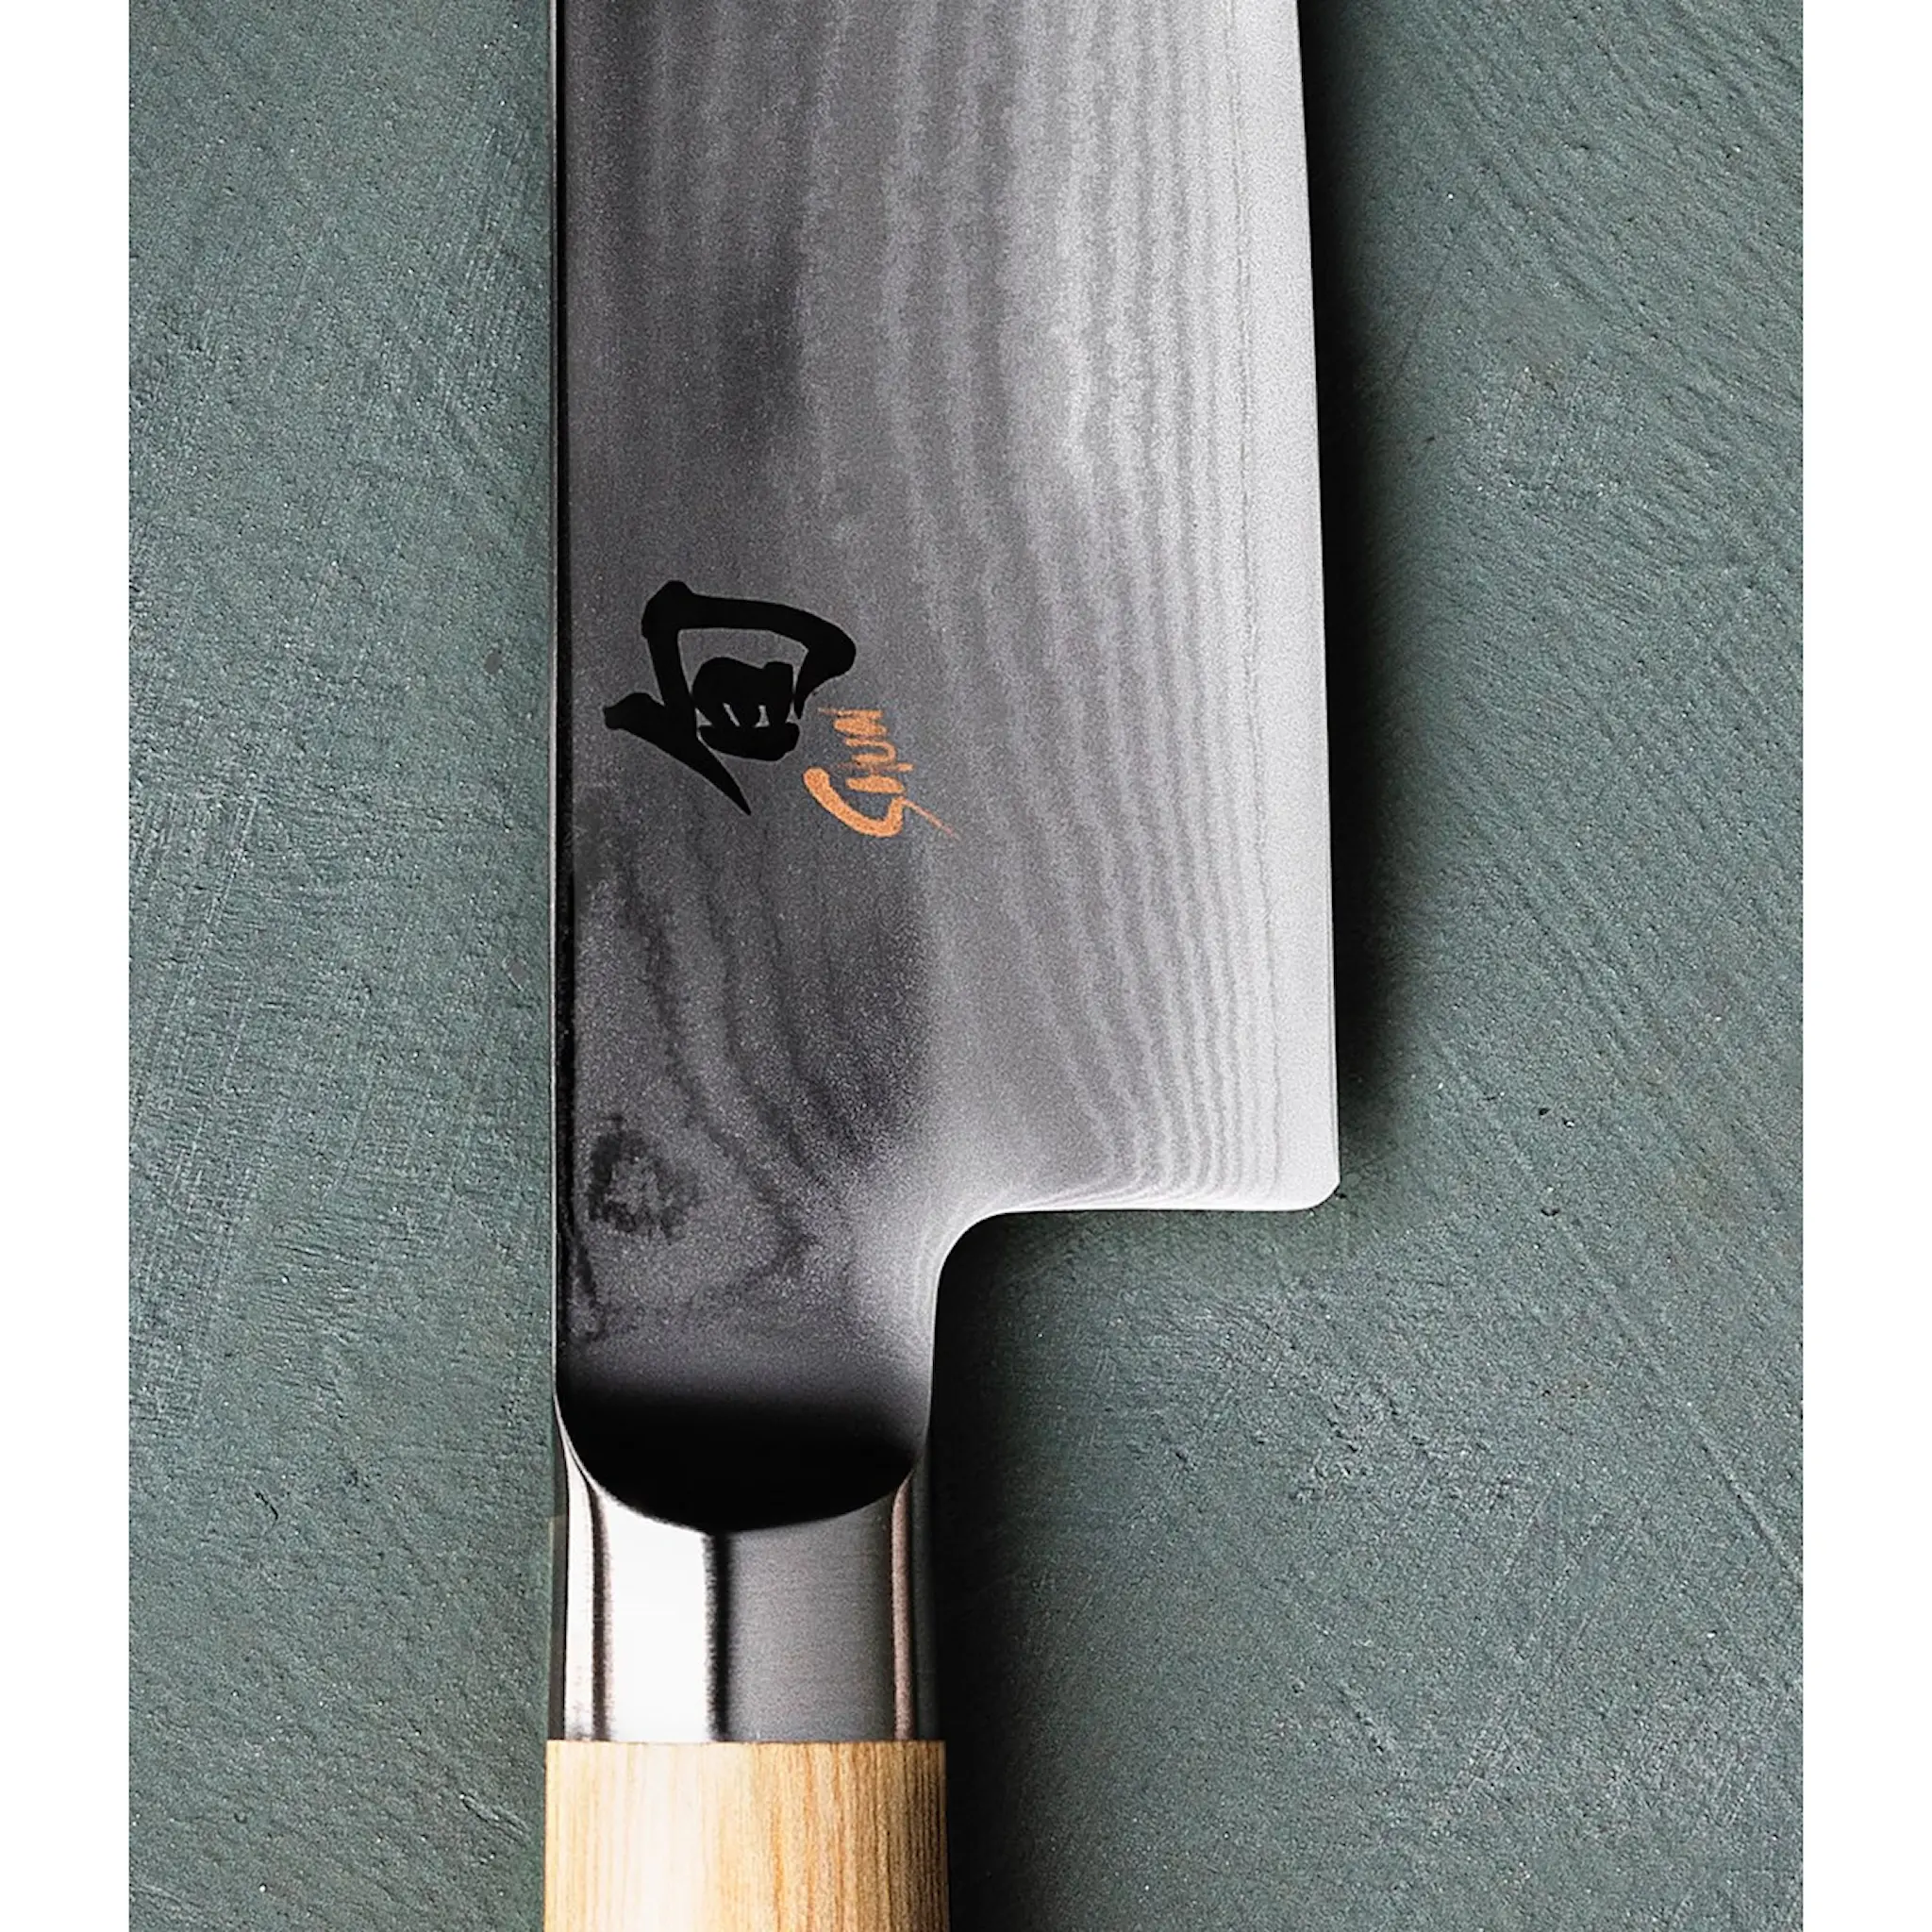 KAI Shun Classic White Universalkniv 15 cm Rostfri